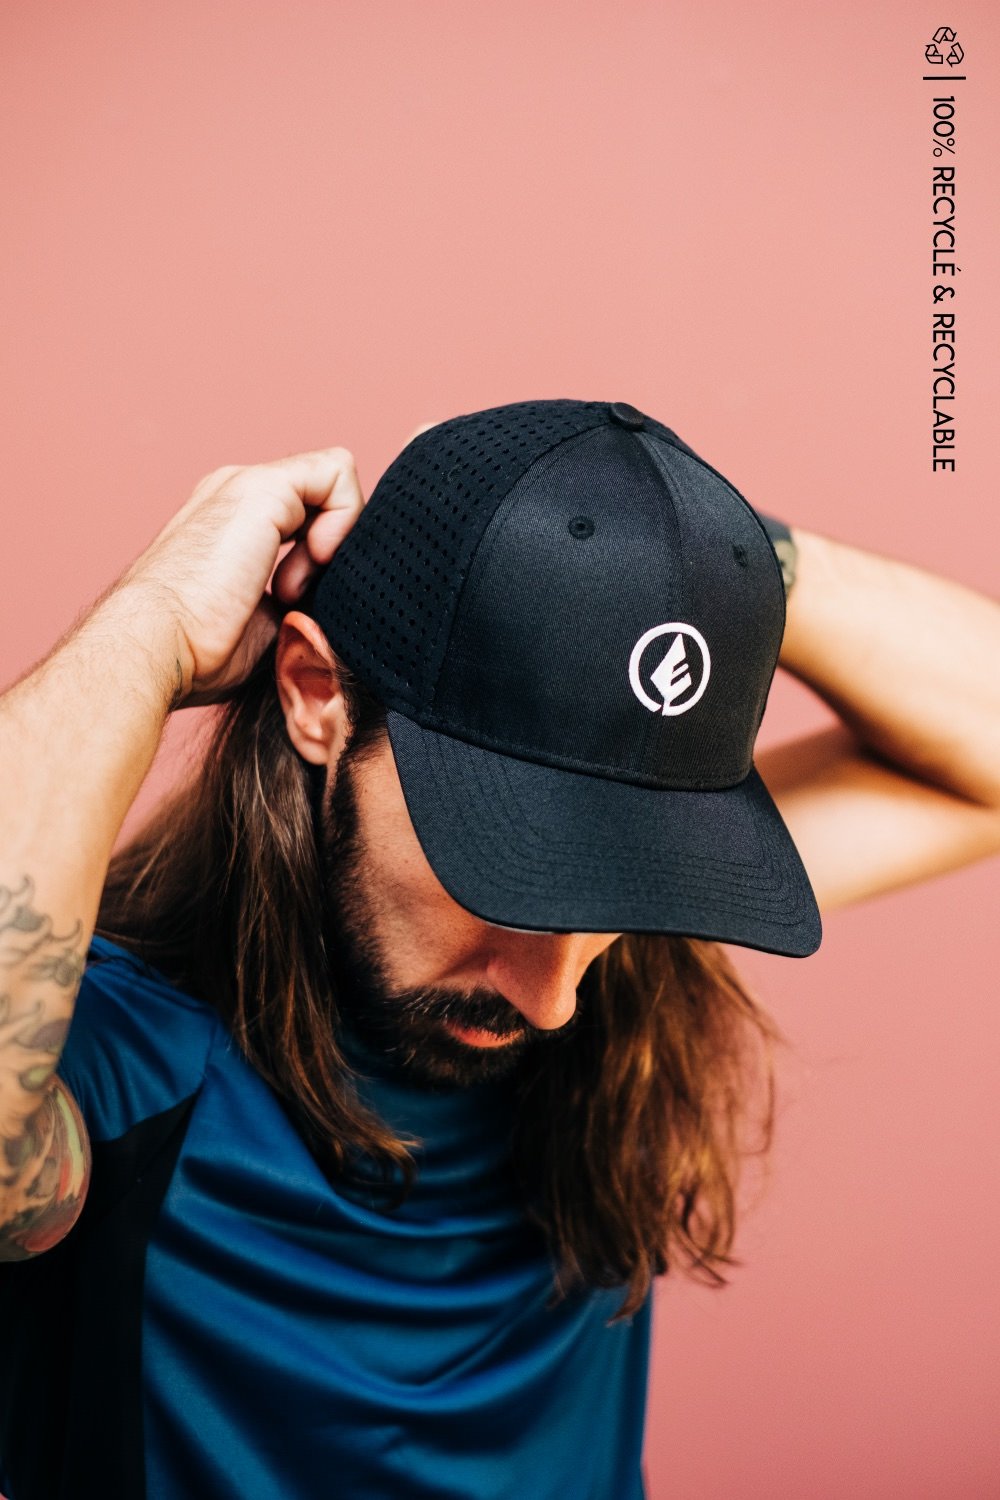 WILD CAP - casquette technique recyclée [black logo]